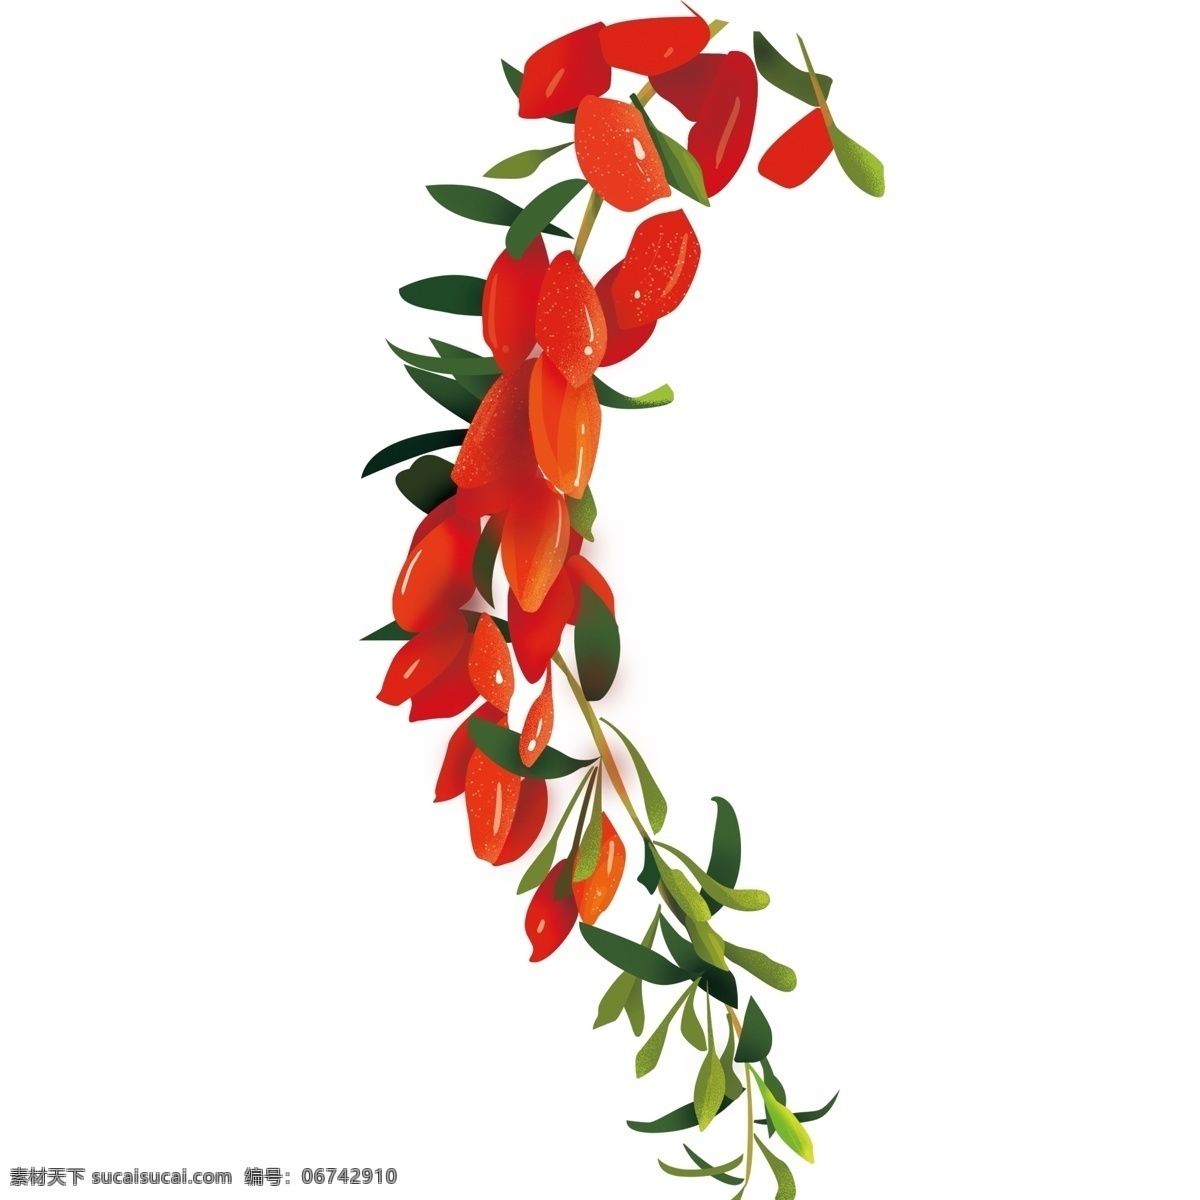 清新 红色 枸杞 装饰 元素 装饰元素 手绘 植物 水果 树叶 补血 中药